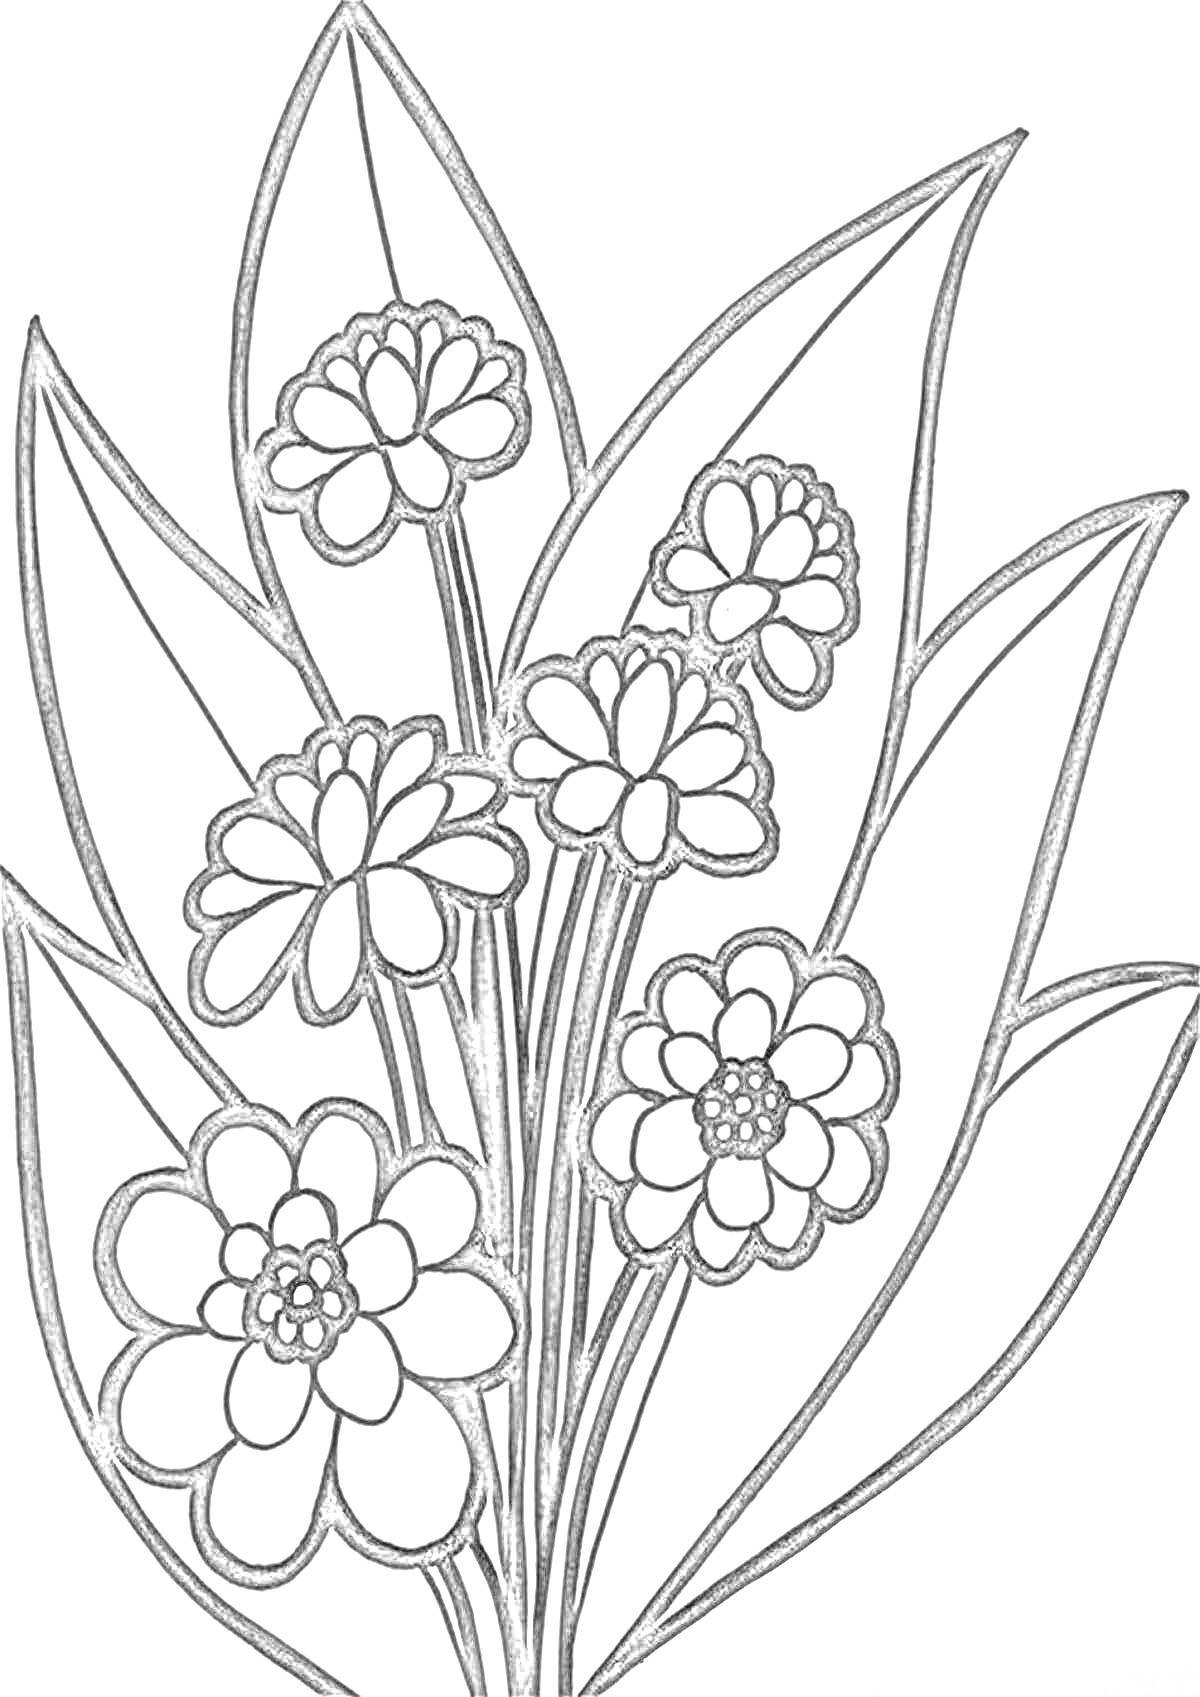 Раскраска Цветок с несколькими распустившимися бутонами и листьями